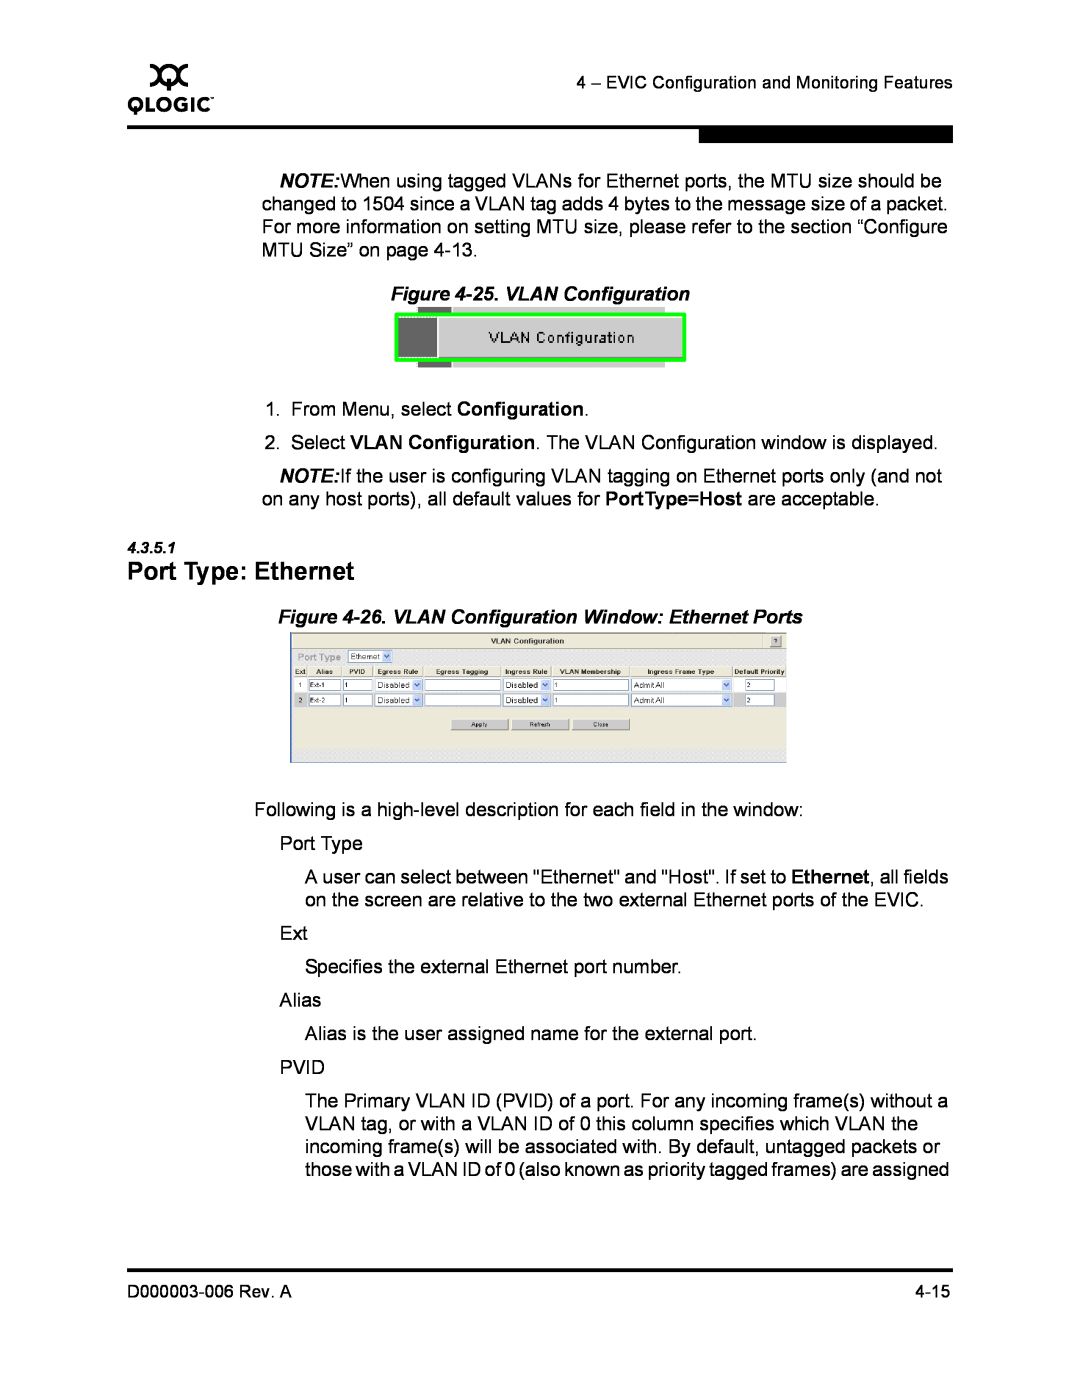 Q-Logic 9000 manual Port Type Ethernet, 25. VLAN Configuration, 26. VLAN Configuration Window Ethernet Ports 